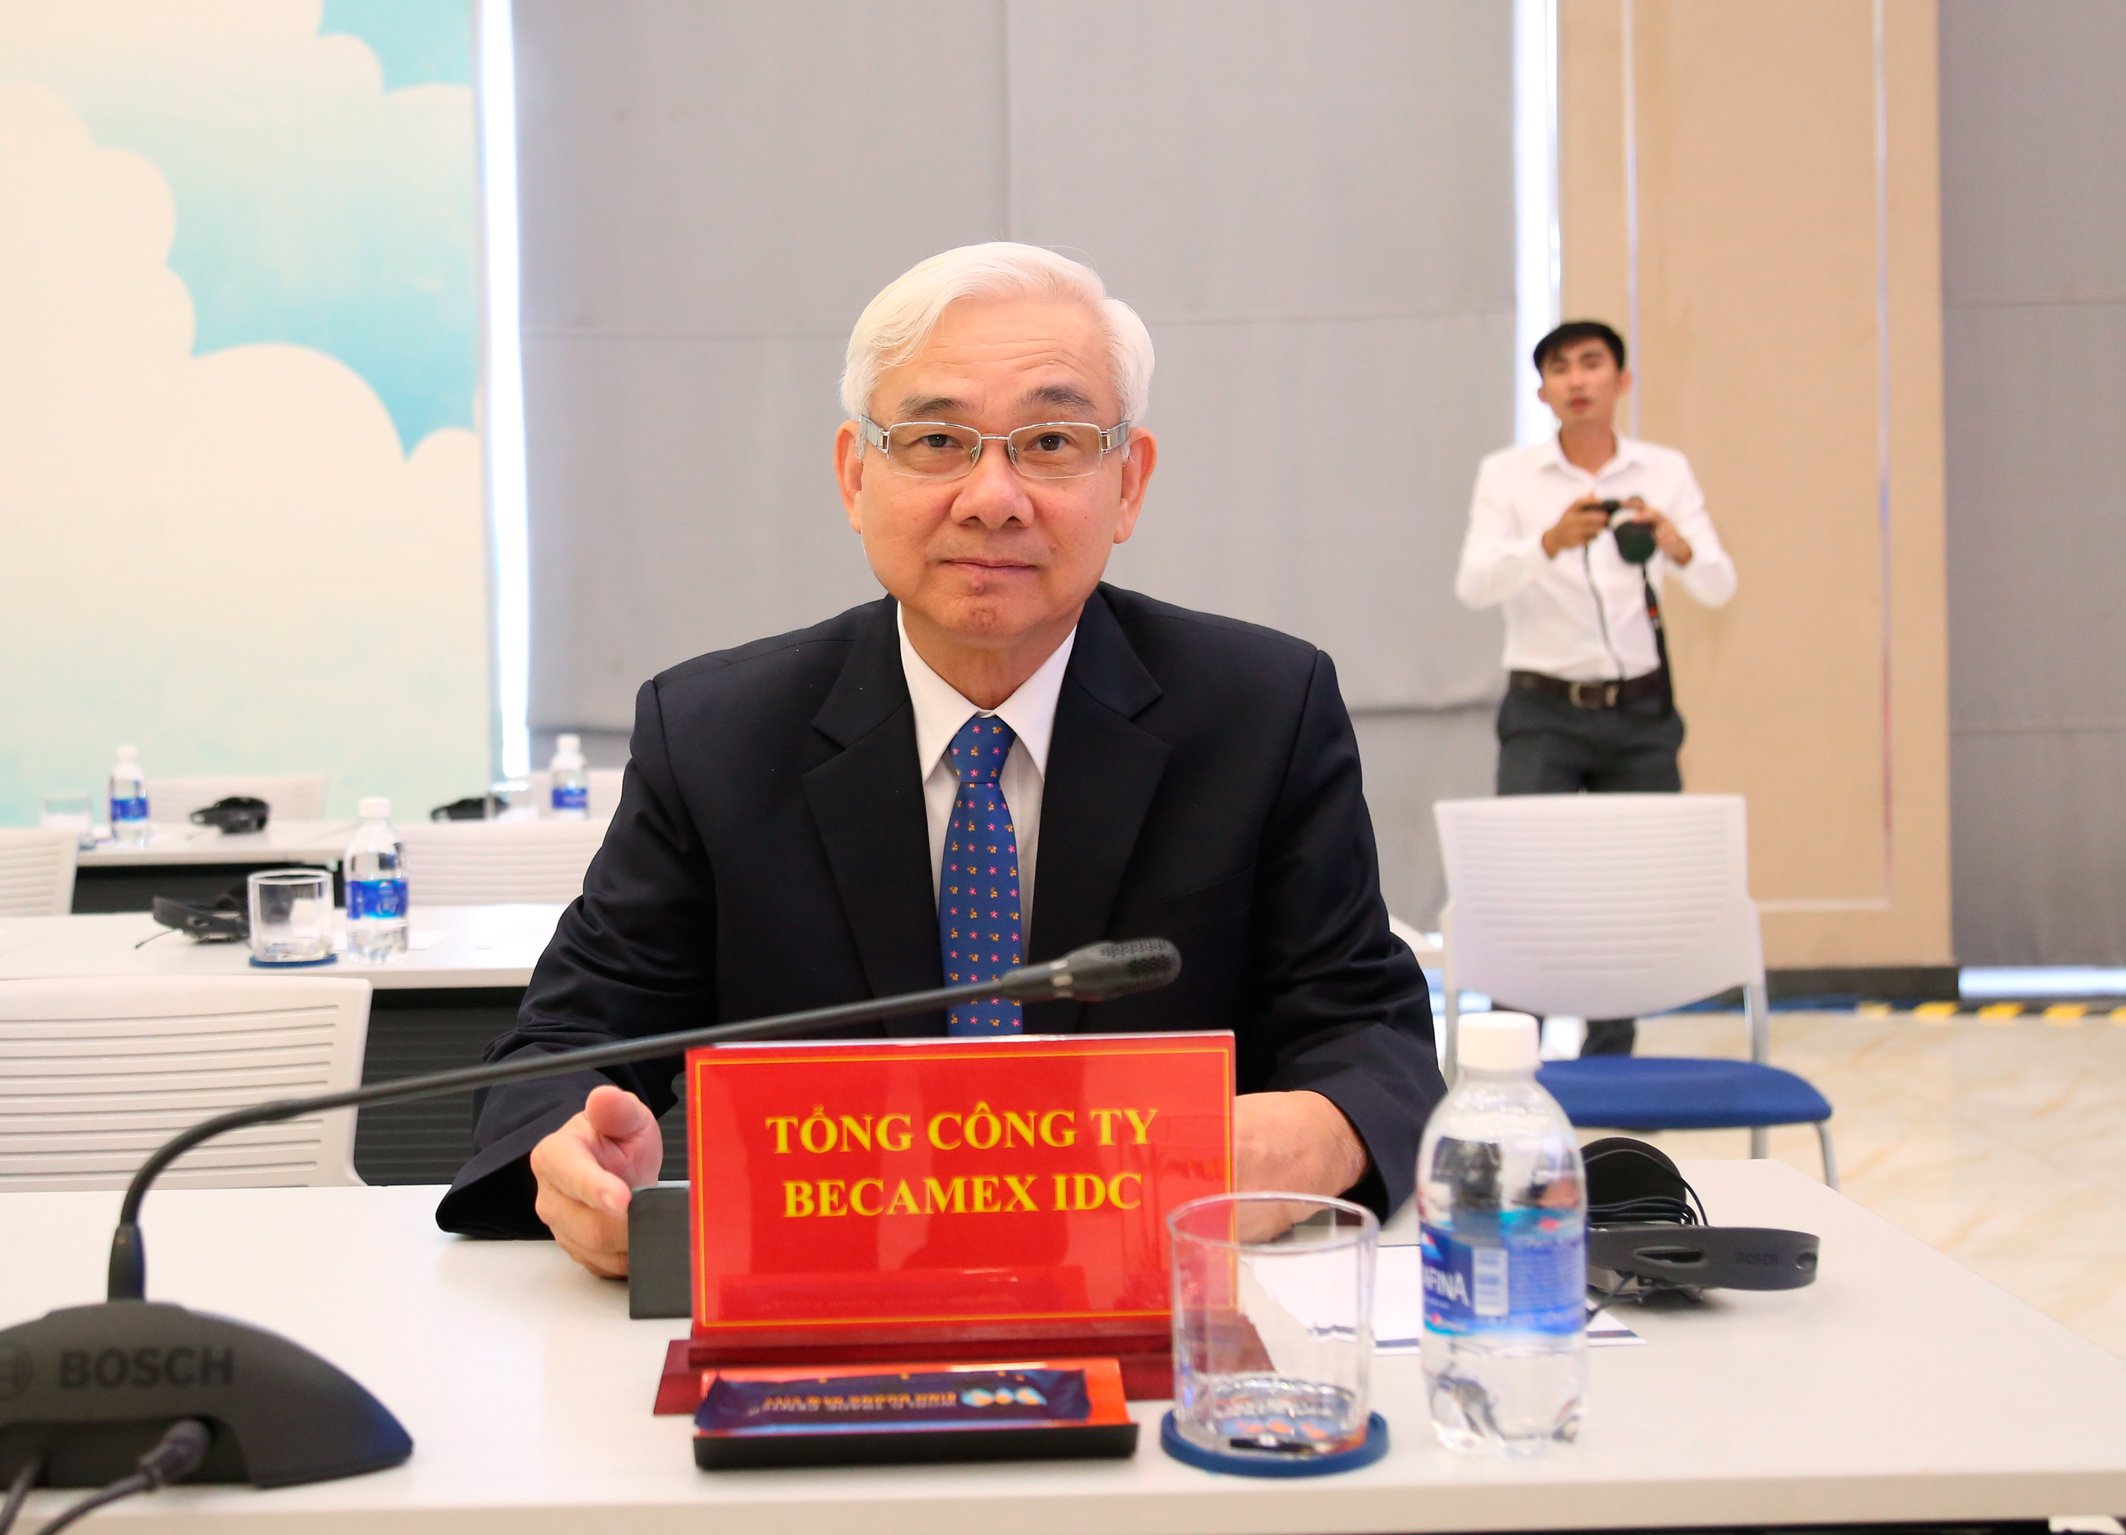 Đồng chí Phạm Ngọc Thuận - Tổng giám đốc Tổng Công ty Becamex IDC tại buổi họp báo.